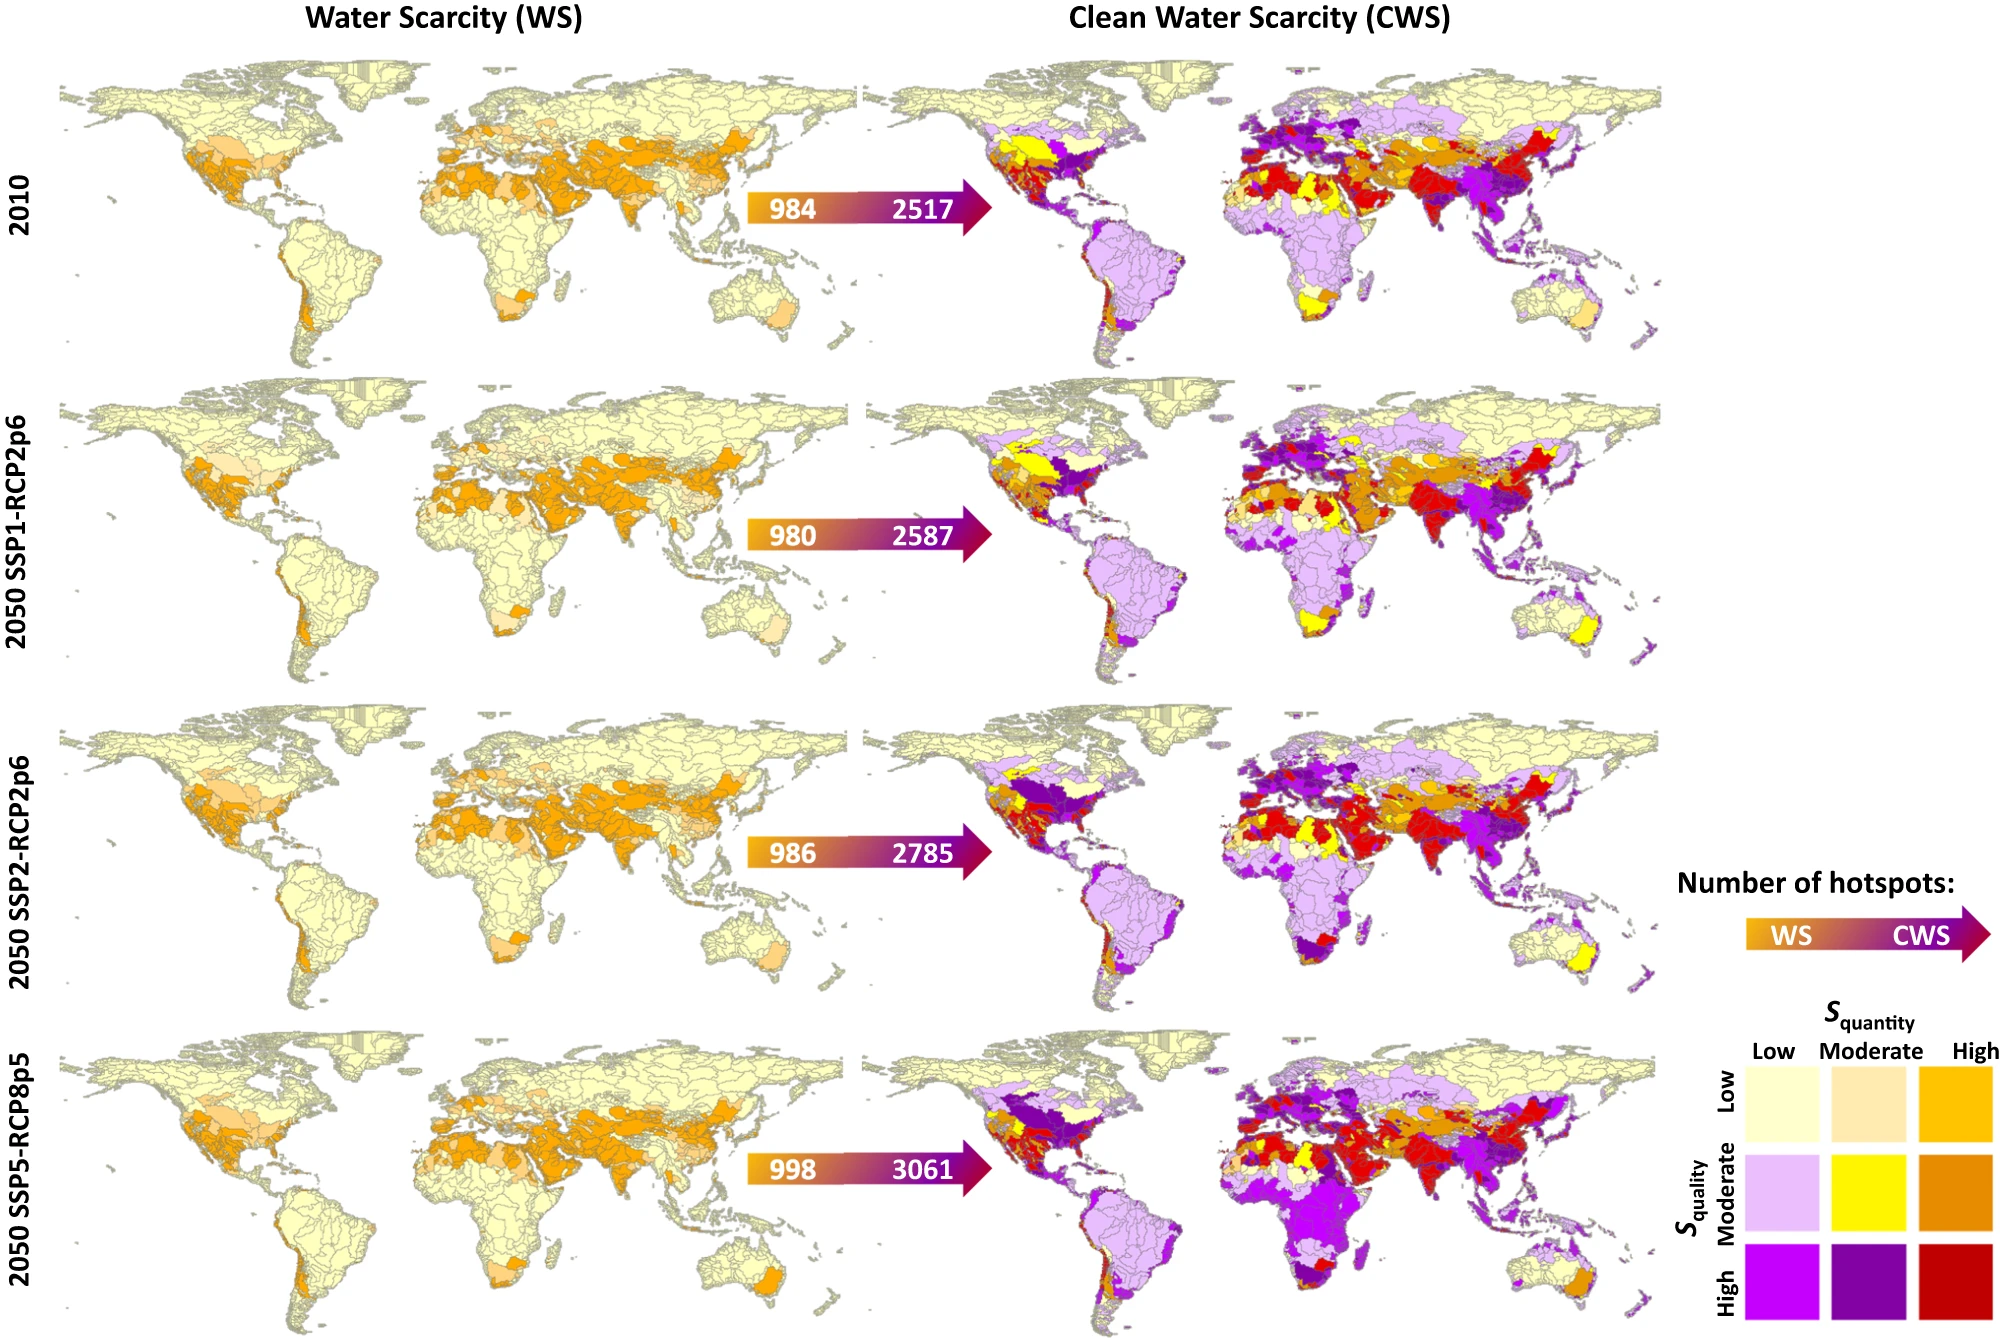 Carte des pénuries d'eau en 2010 et 2050 selon 3 scenarios